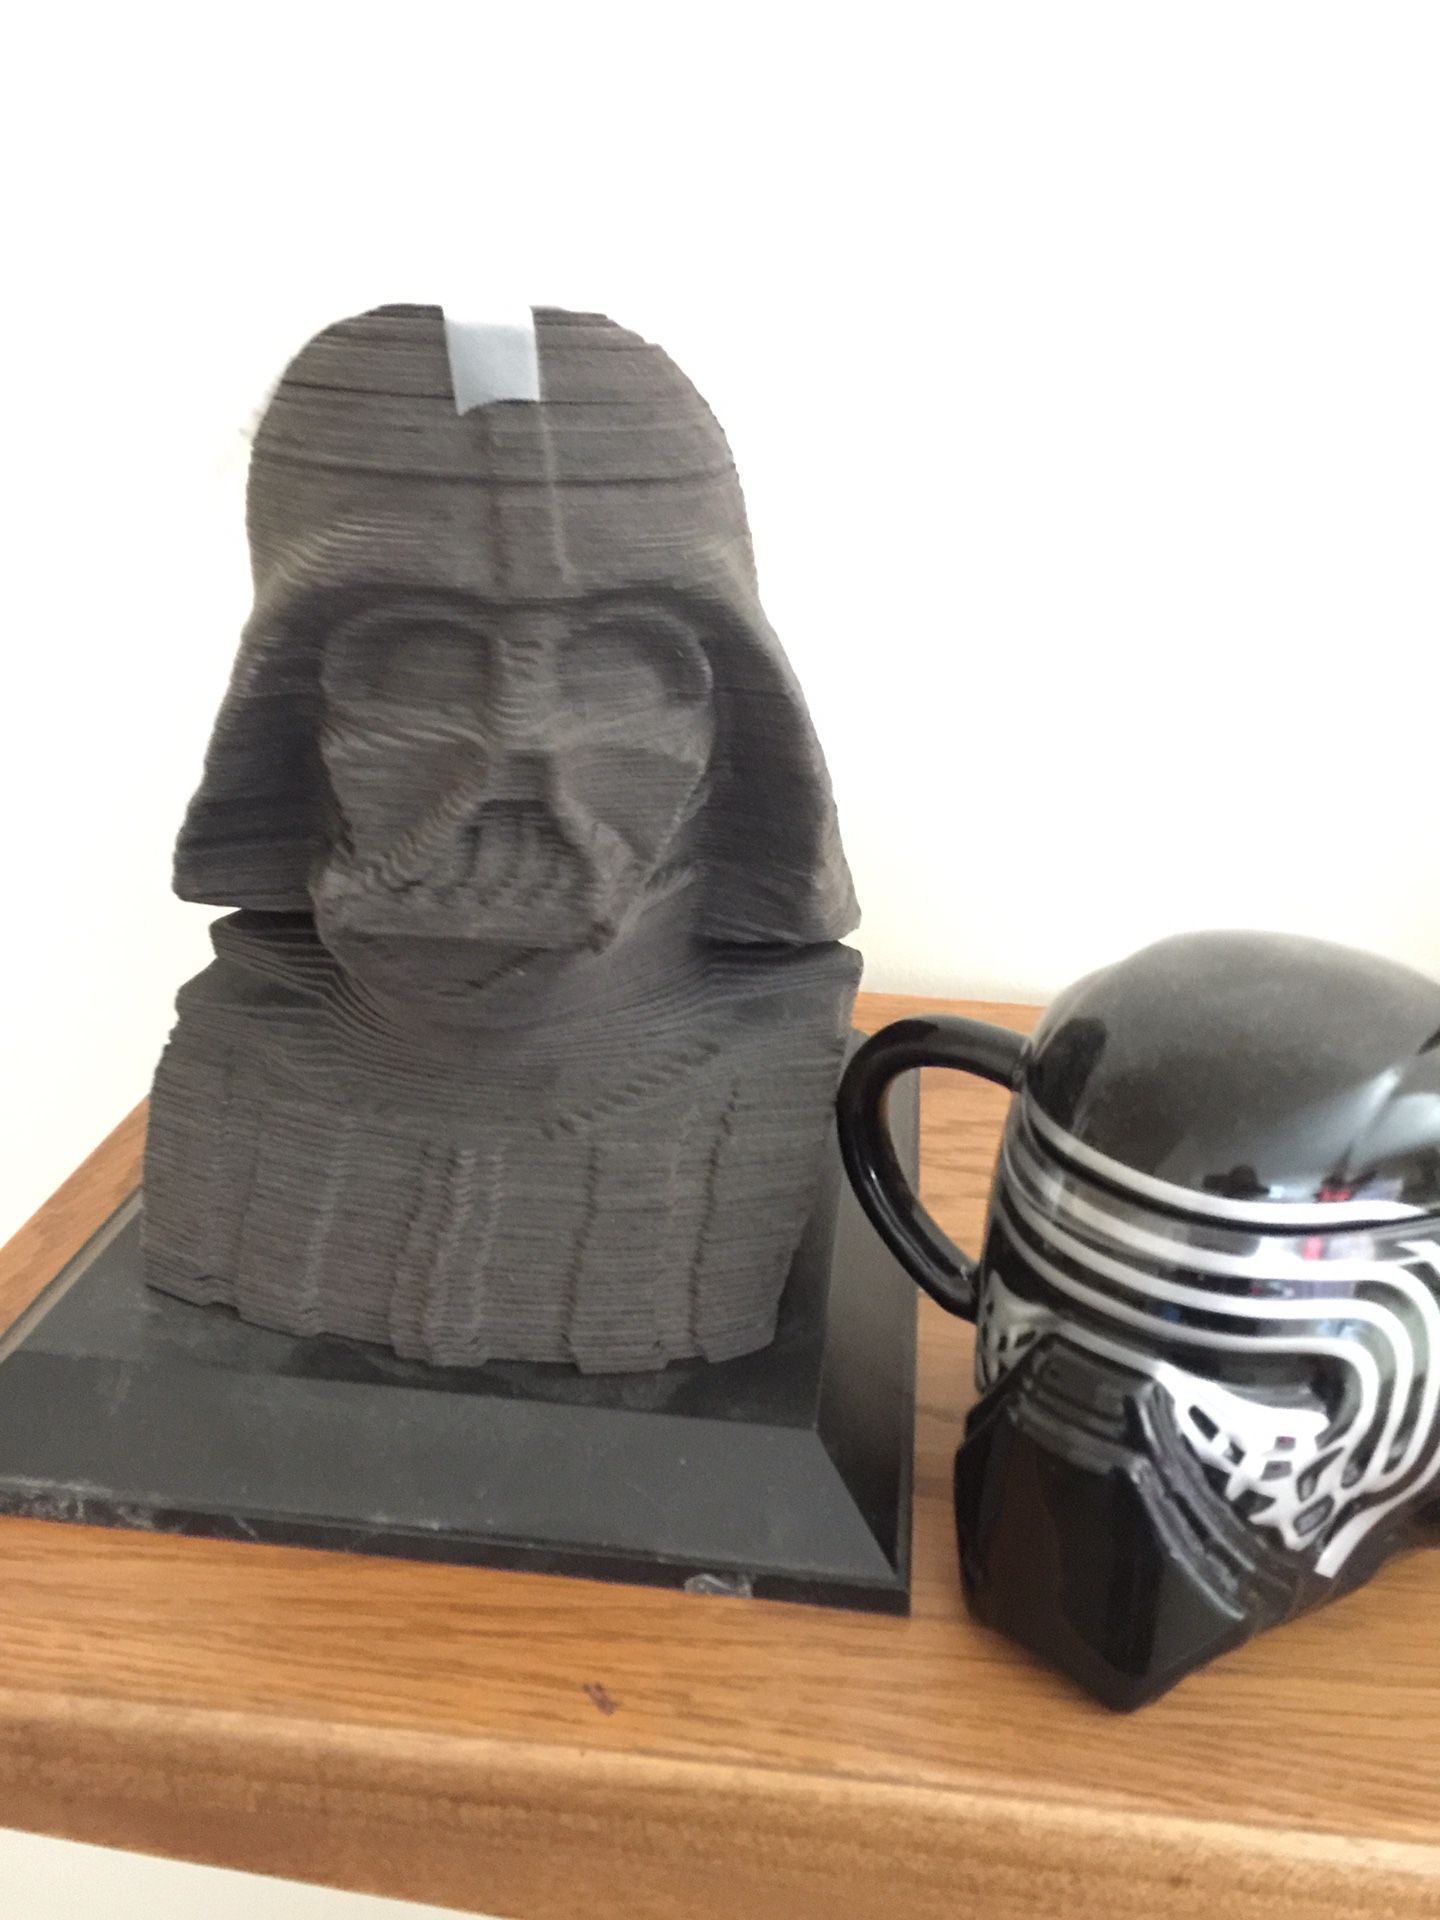 Star Wars 3-D Puzzle and Darth Vader Mug